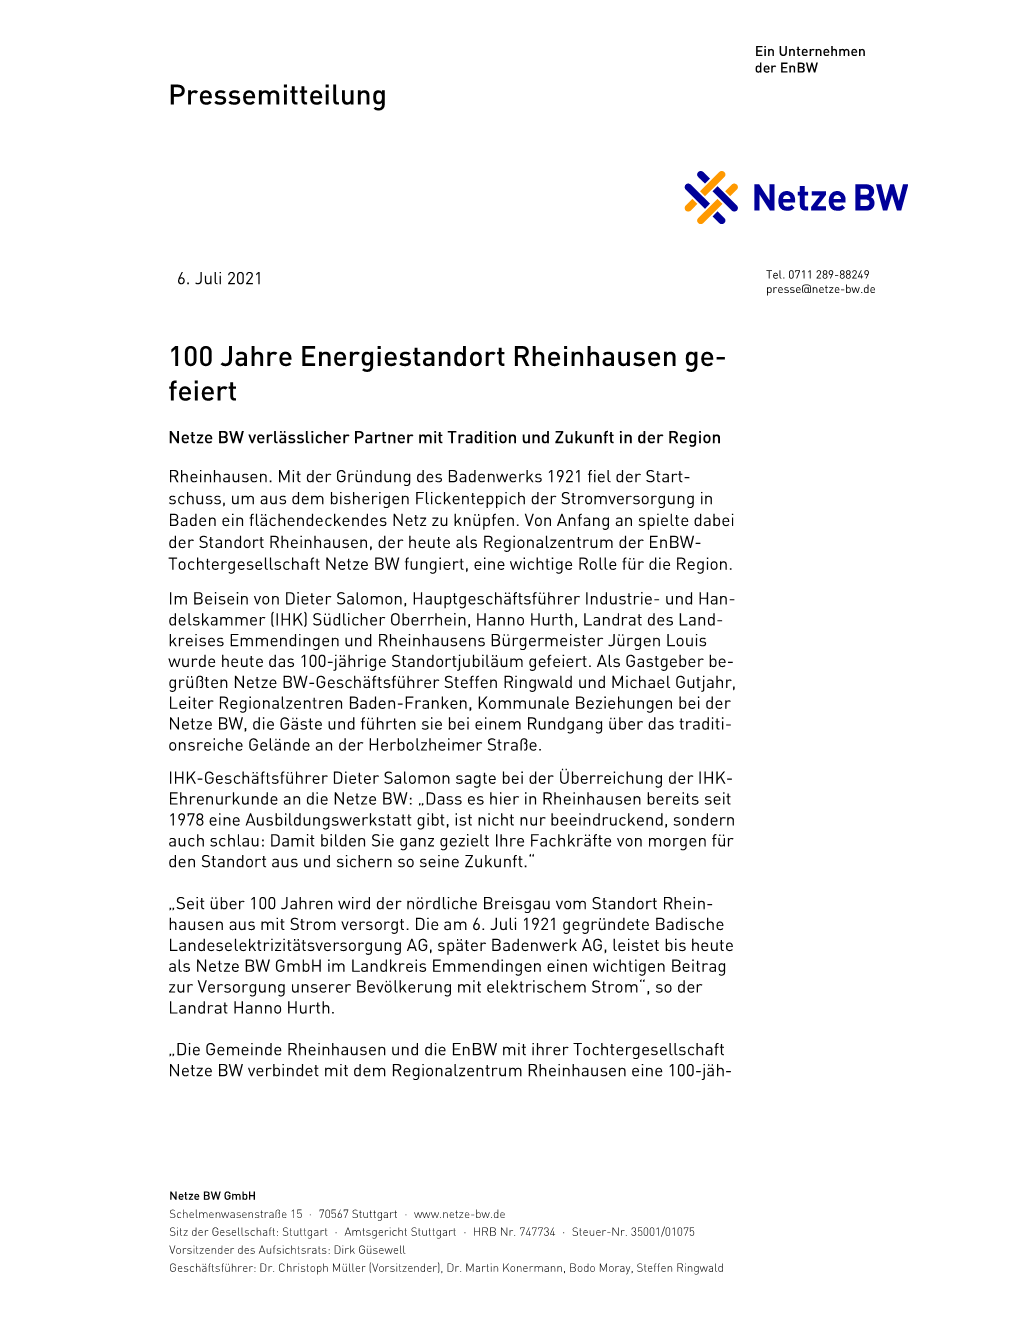 Pressemitteilung 100 Jahre Energiestandort Rheinhausen Ge